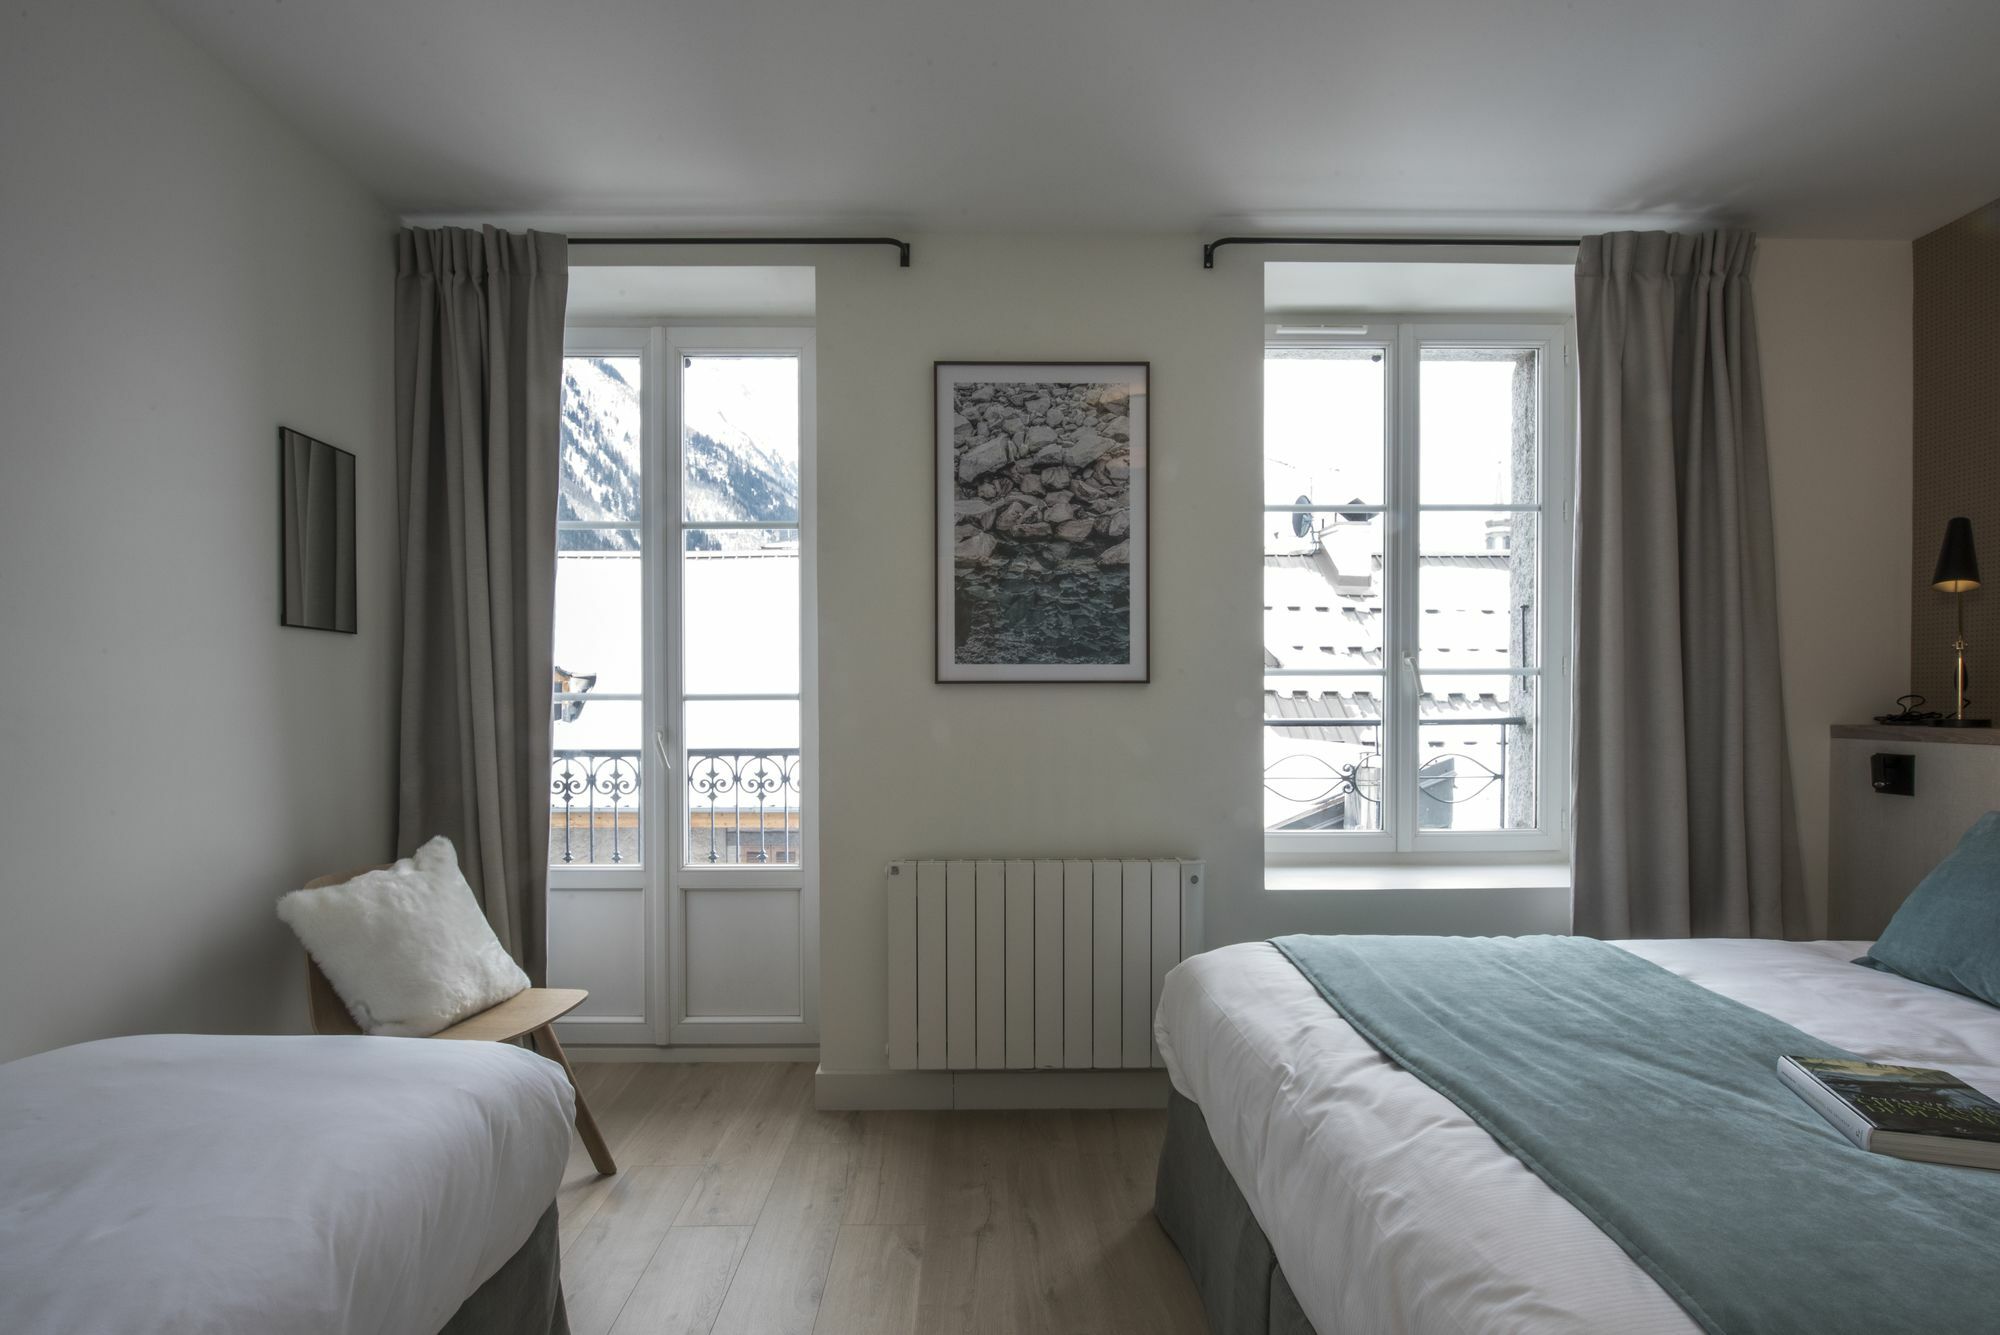 Le Genepy - Appart'Hotel De Charme Chamonix Exterior foto